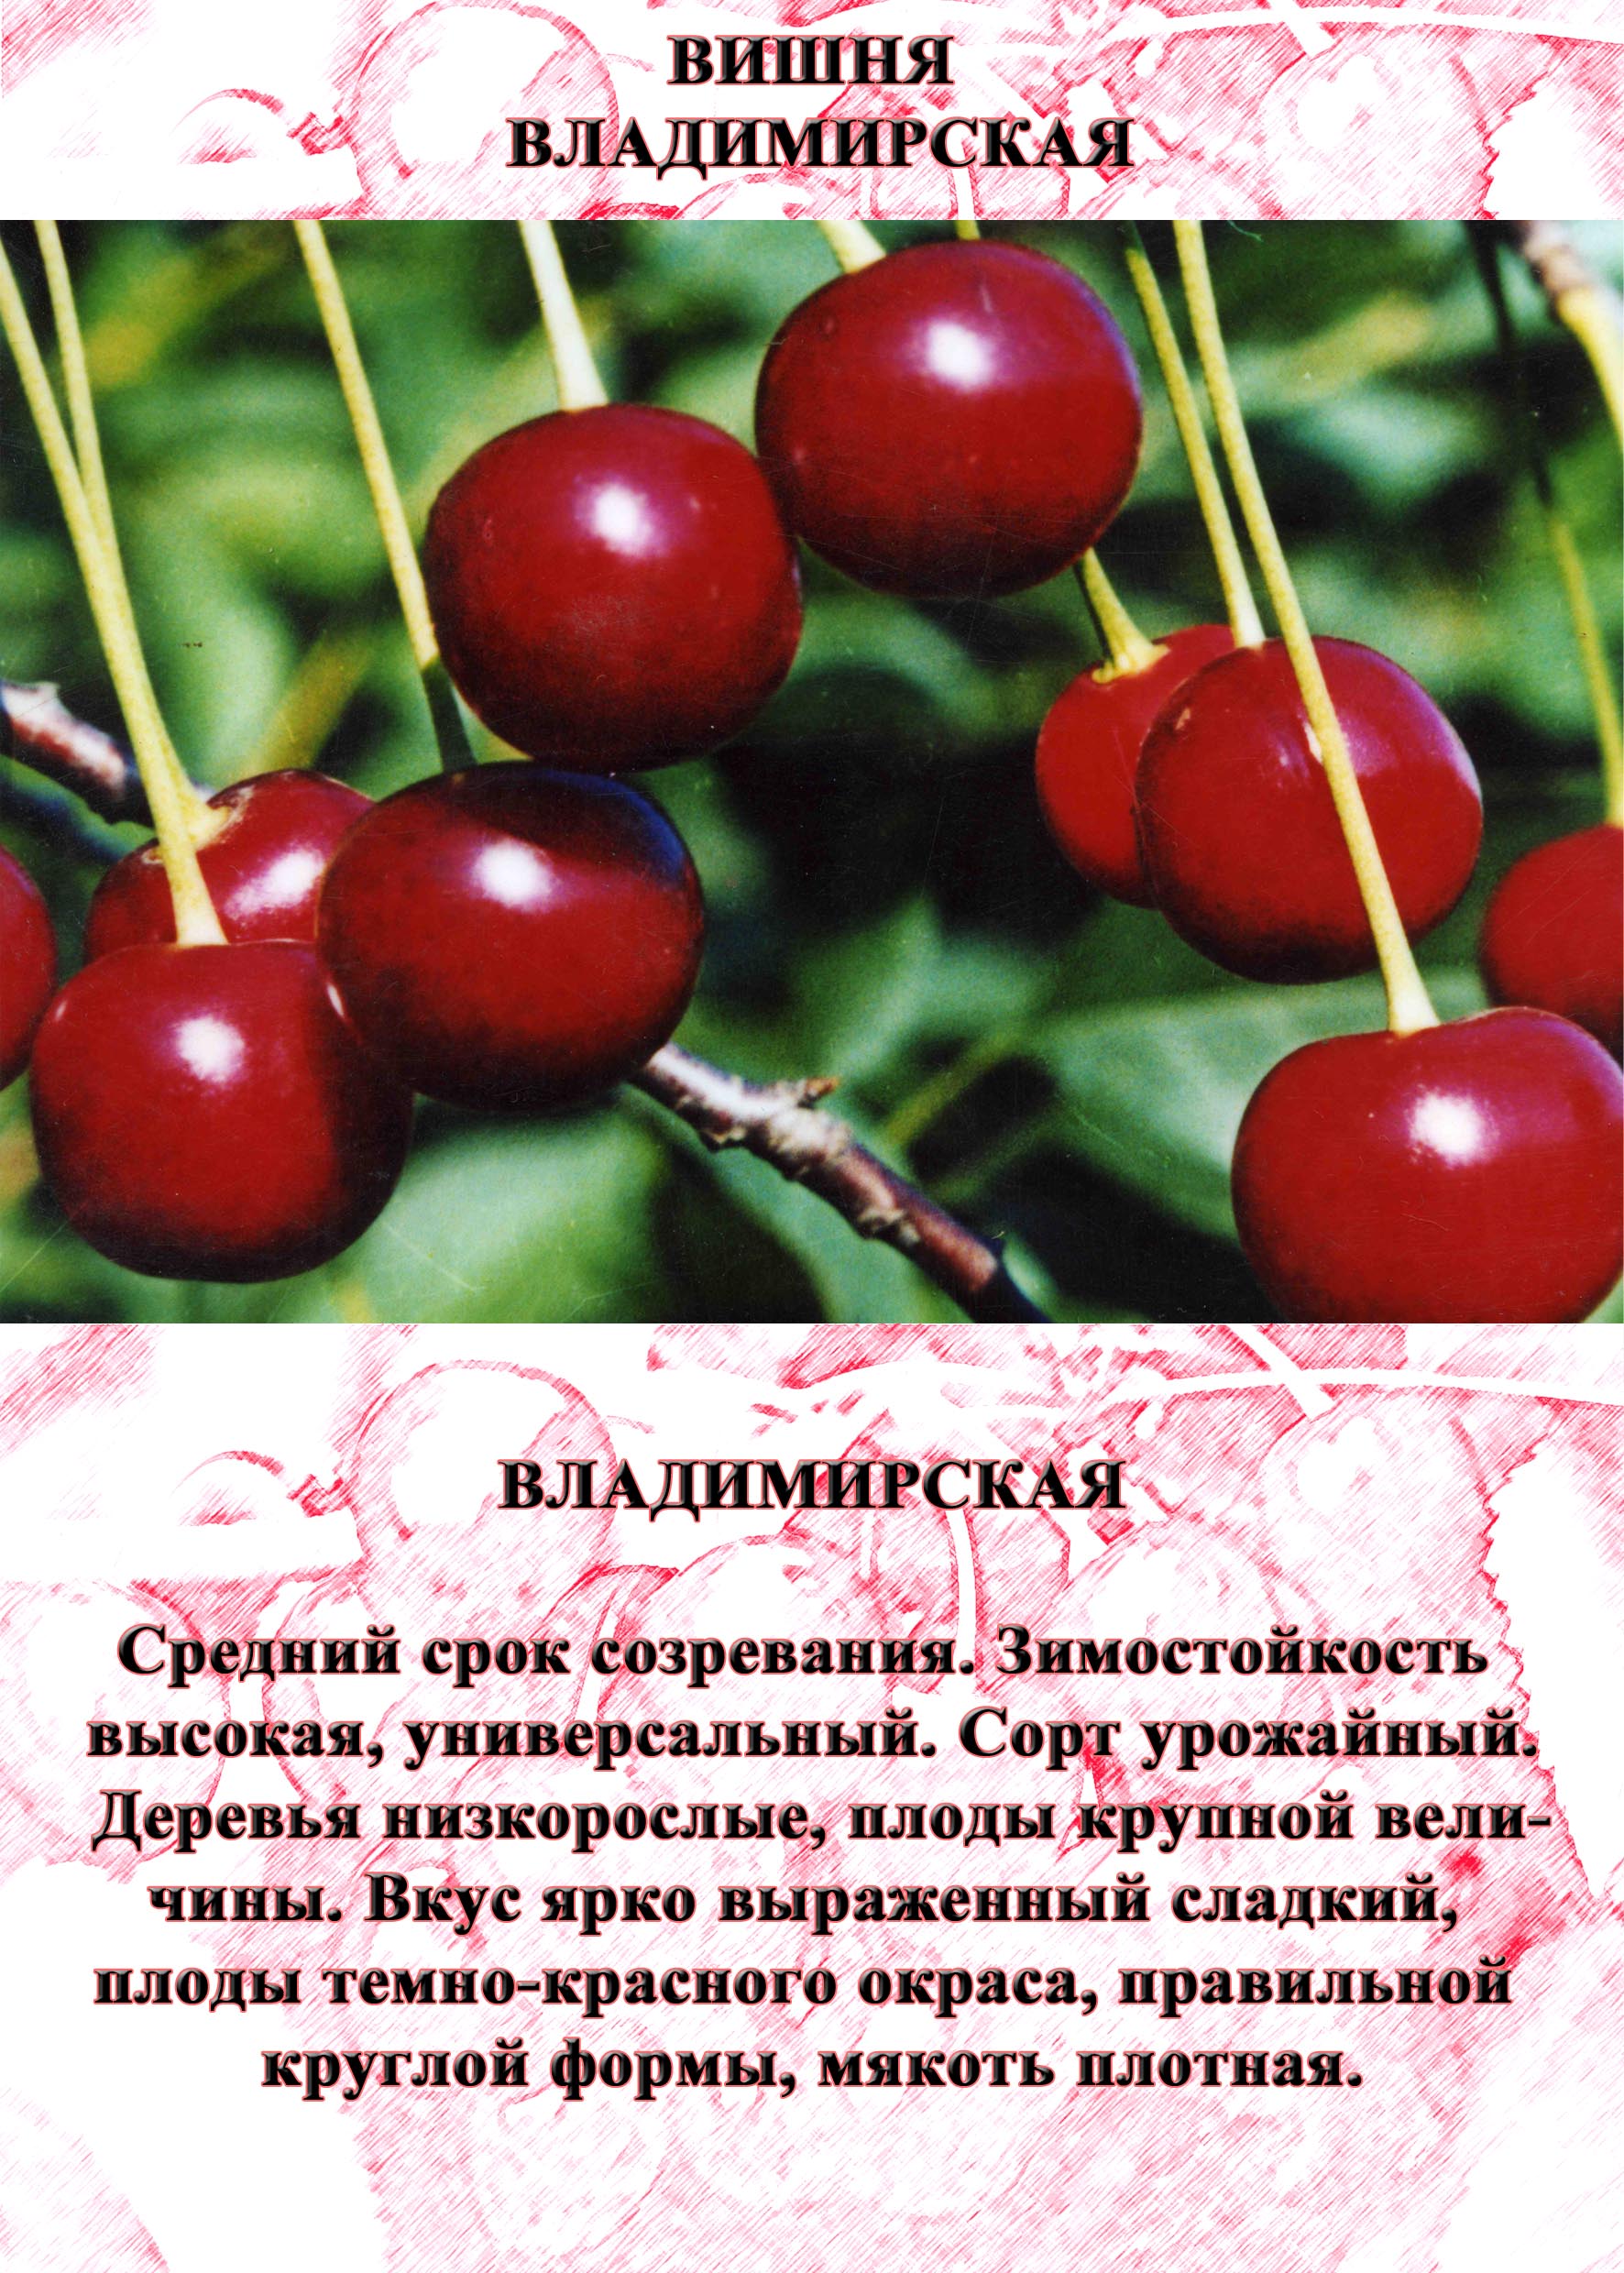 Хорошие сорта вишни для средней полосы россии с фото и описанием